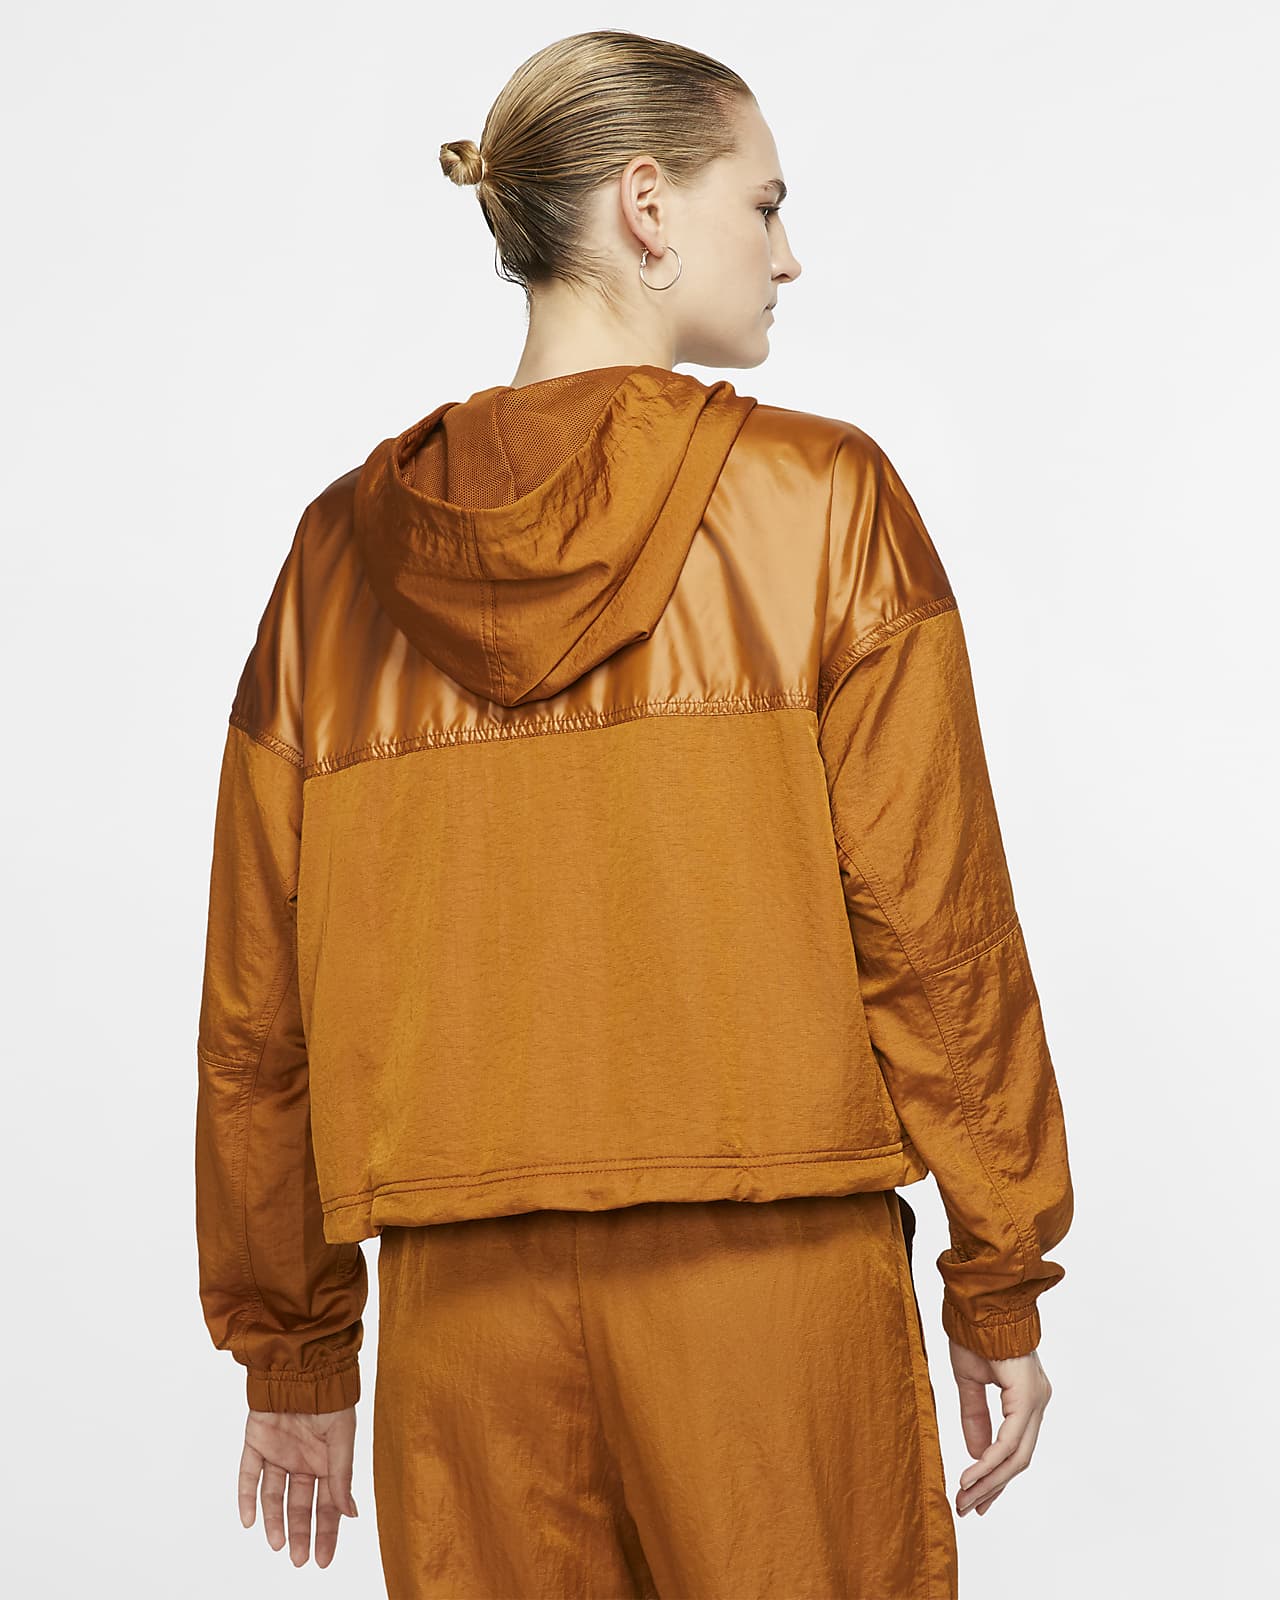 nike women's sportswear windrunner cargo jacket